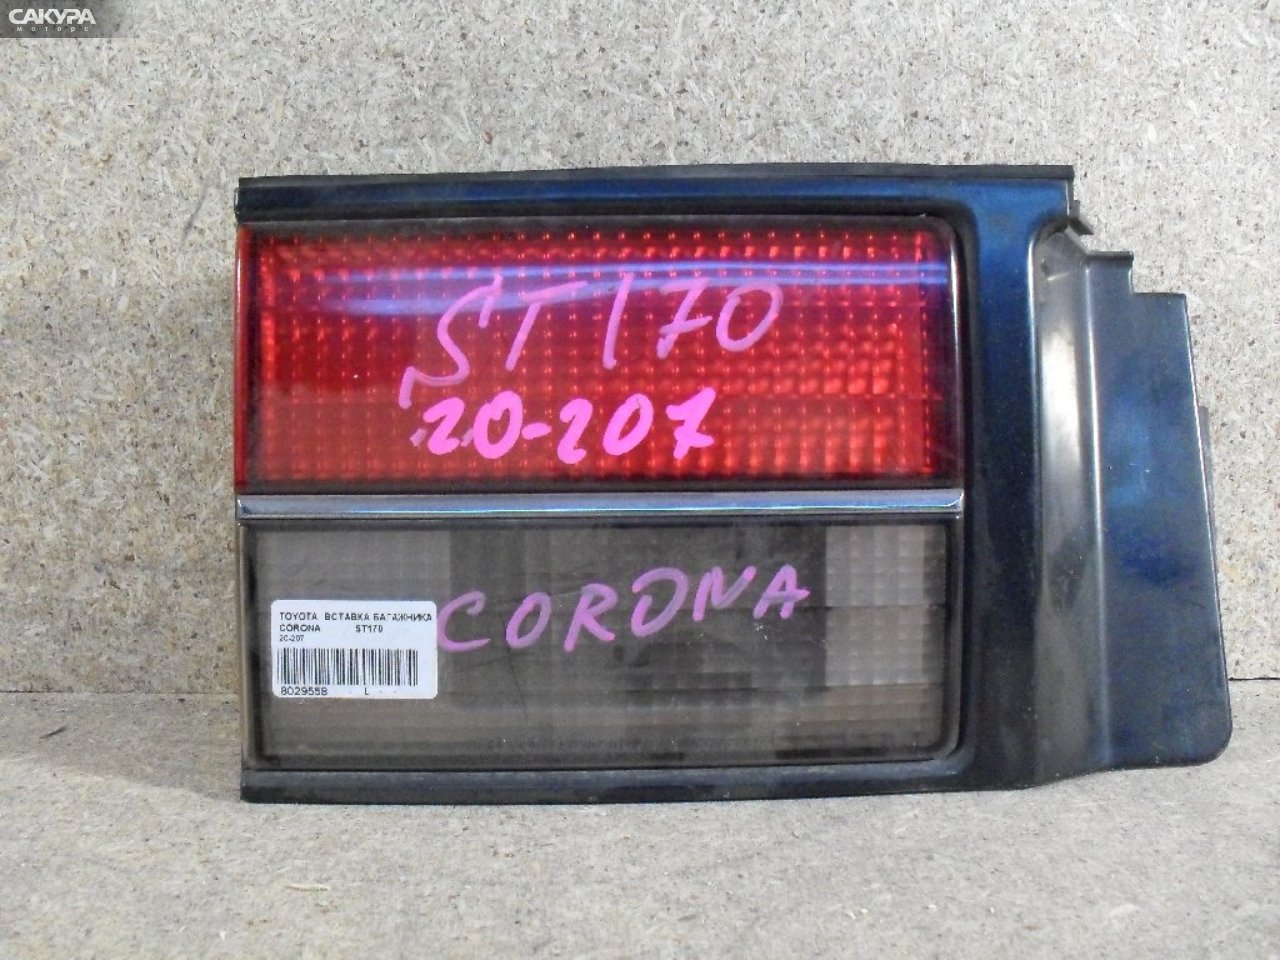 Фонарь вставка багажника левый Toyota Corona ST170 20-207: купить в Сакура Абакан.